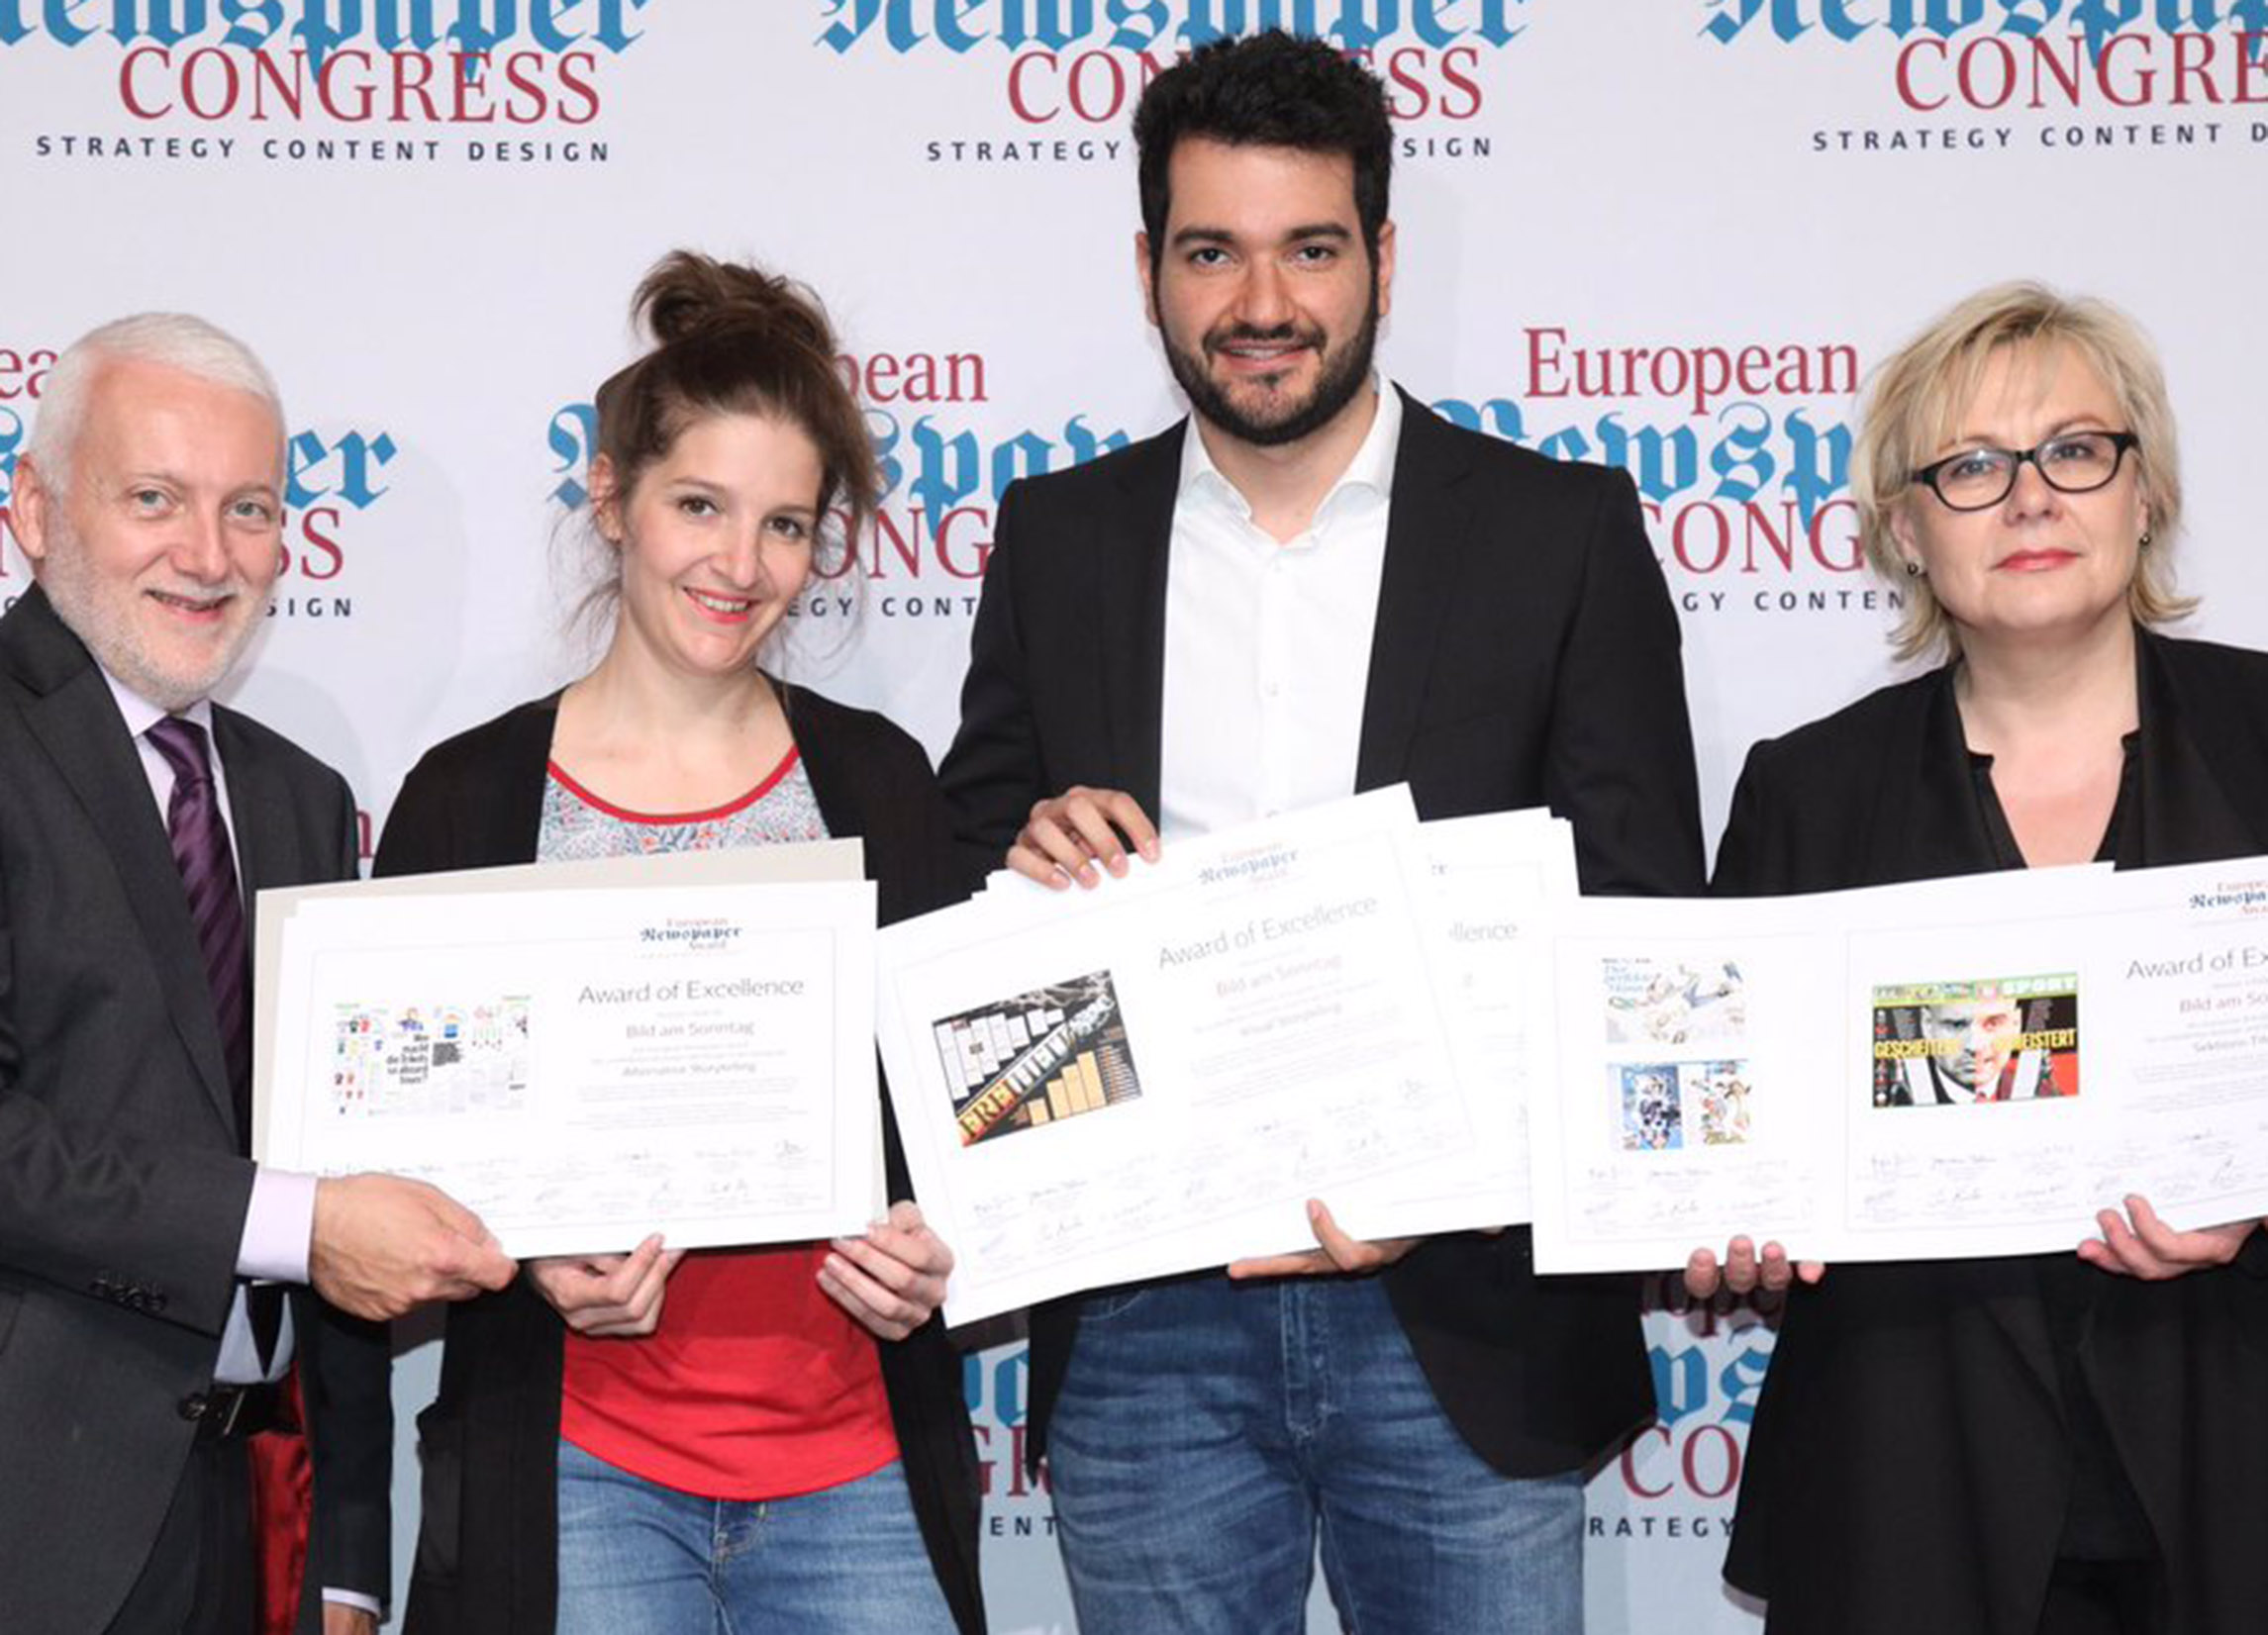 European Newspaper Congress 2017